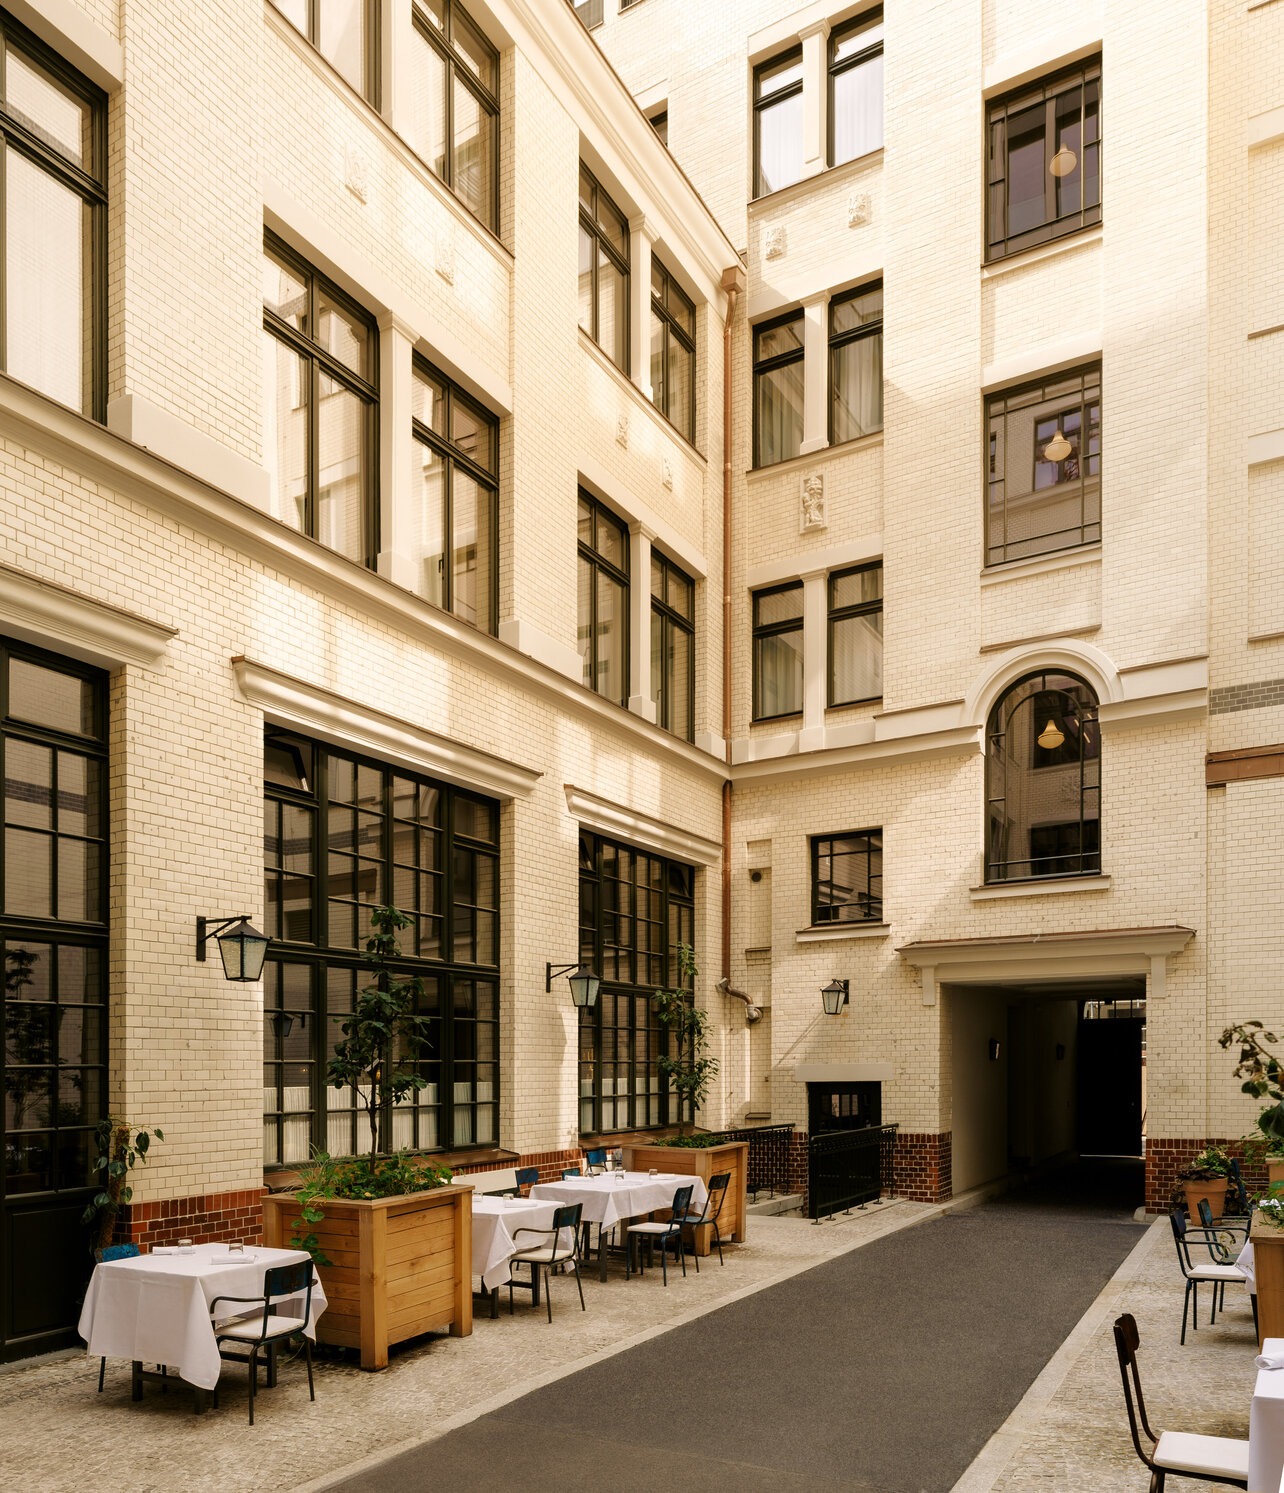 Blick in den charmanten historischen Innenhof des Restaurants Château Royal in Berlin Mitte mit elegant in weiß gedeckten Tischen